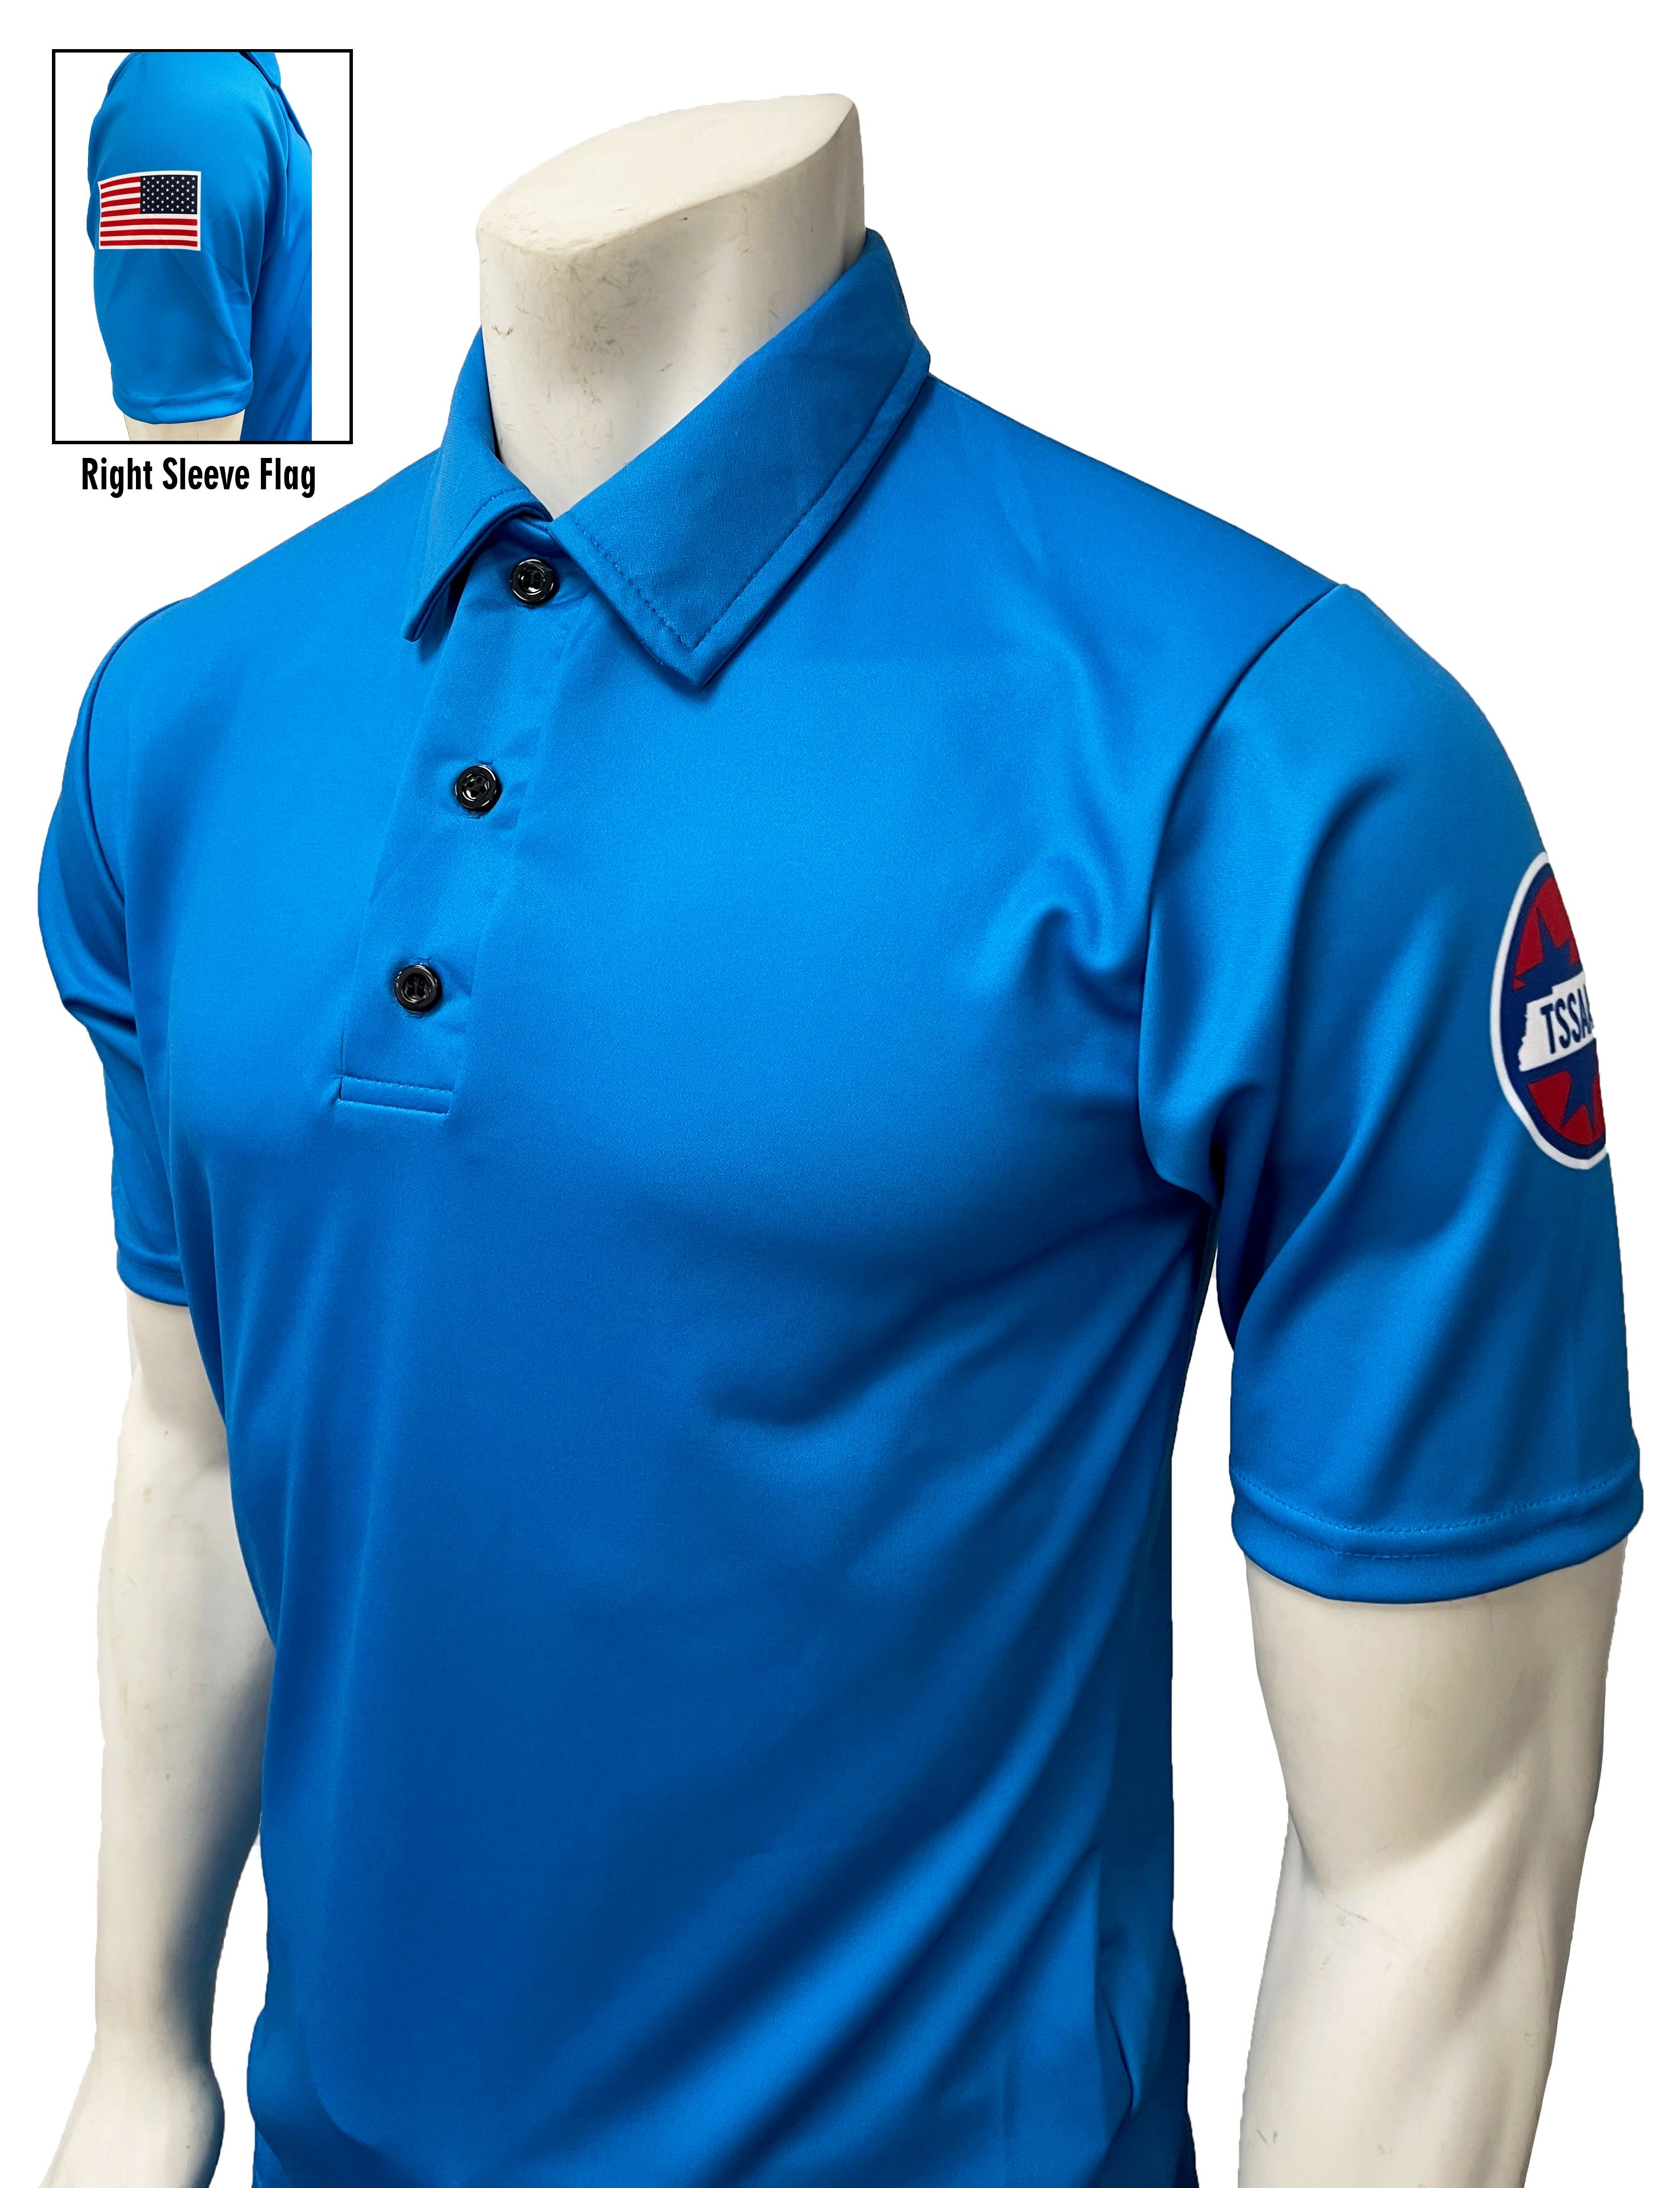 Smitty Made in USA - Dye Sub Alabama Soccer Long Sleeve Shirt